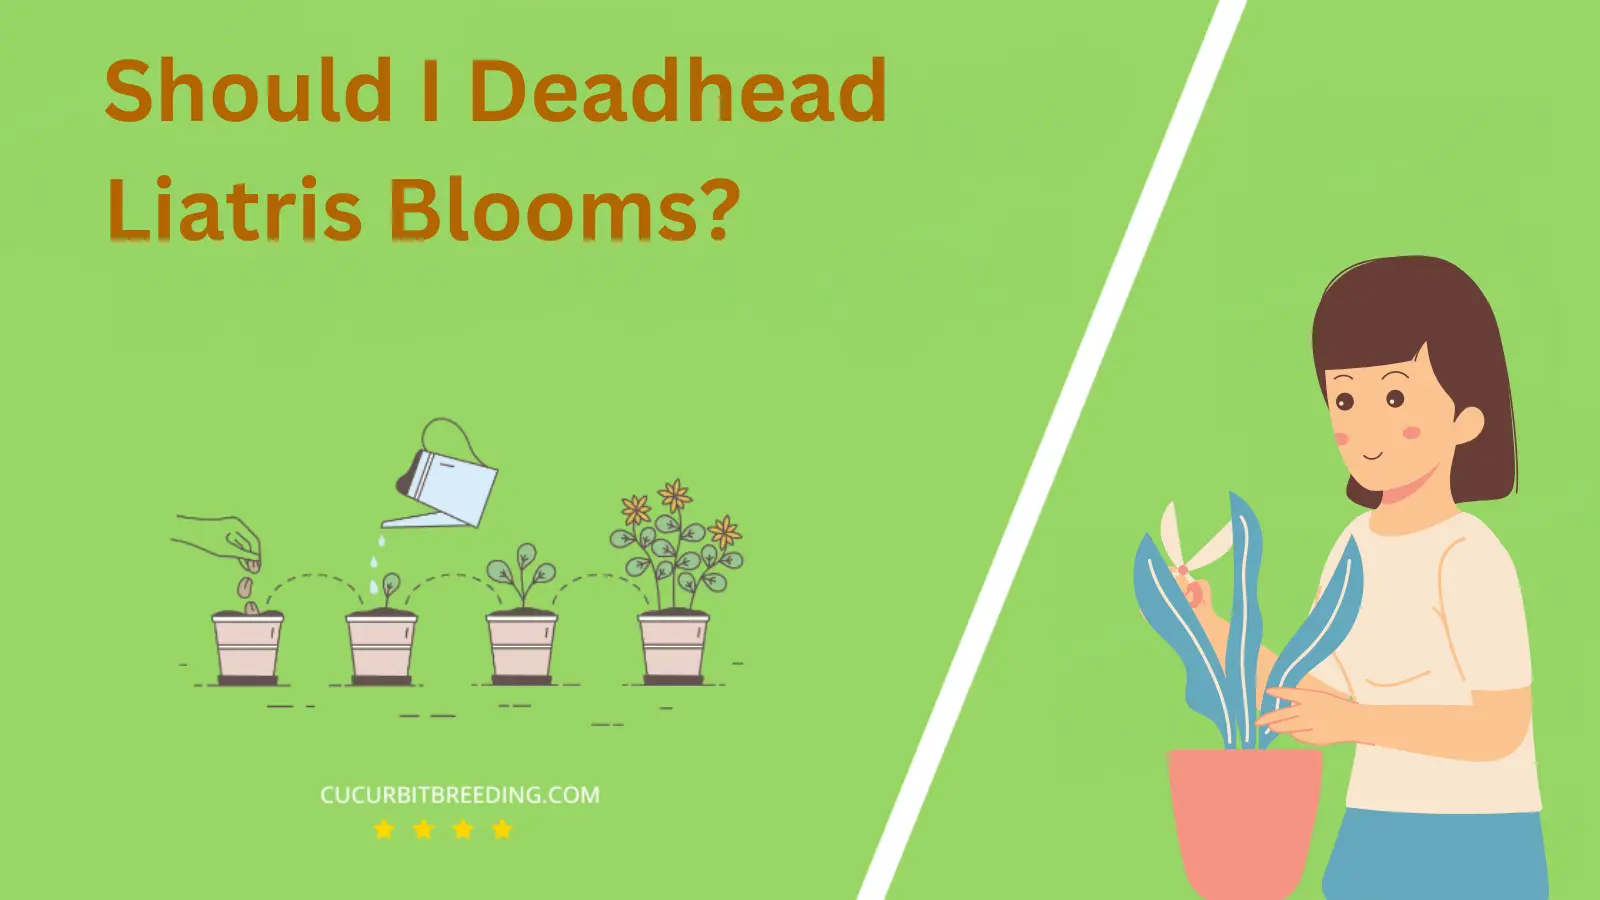 Should I Deadhead Liatris Blooms?